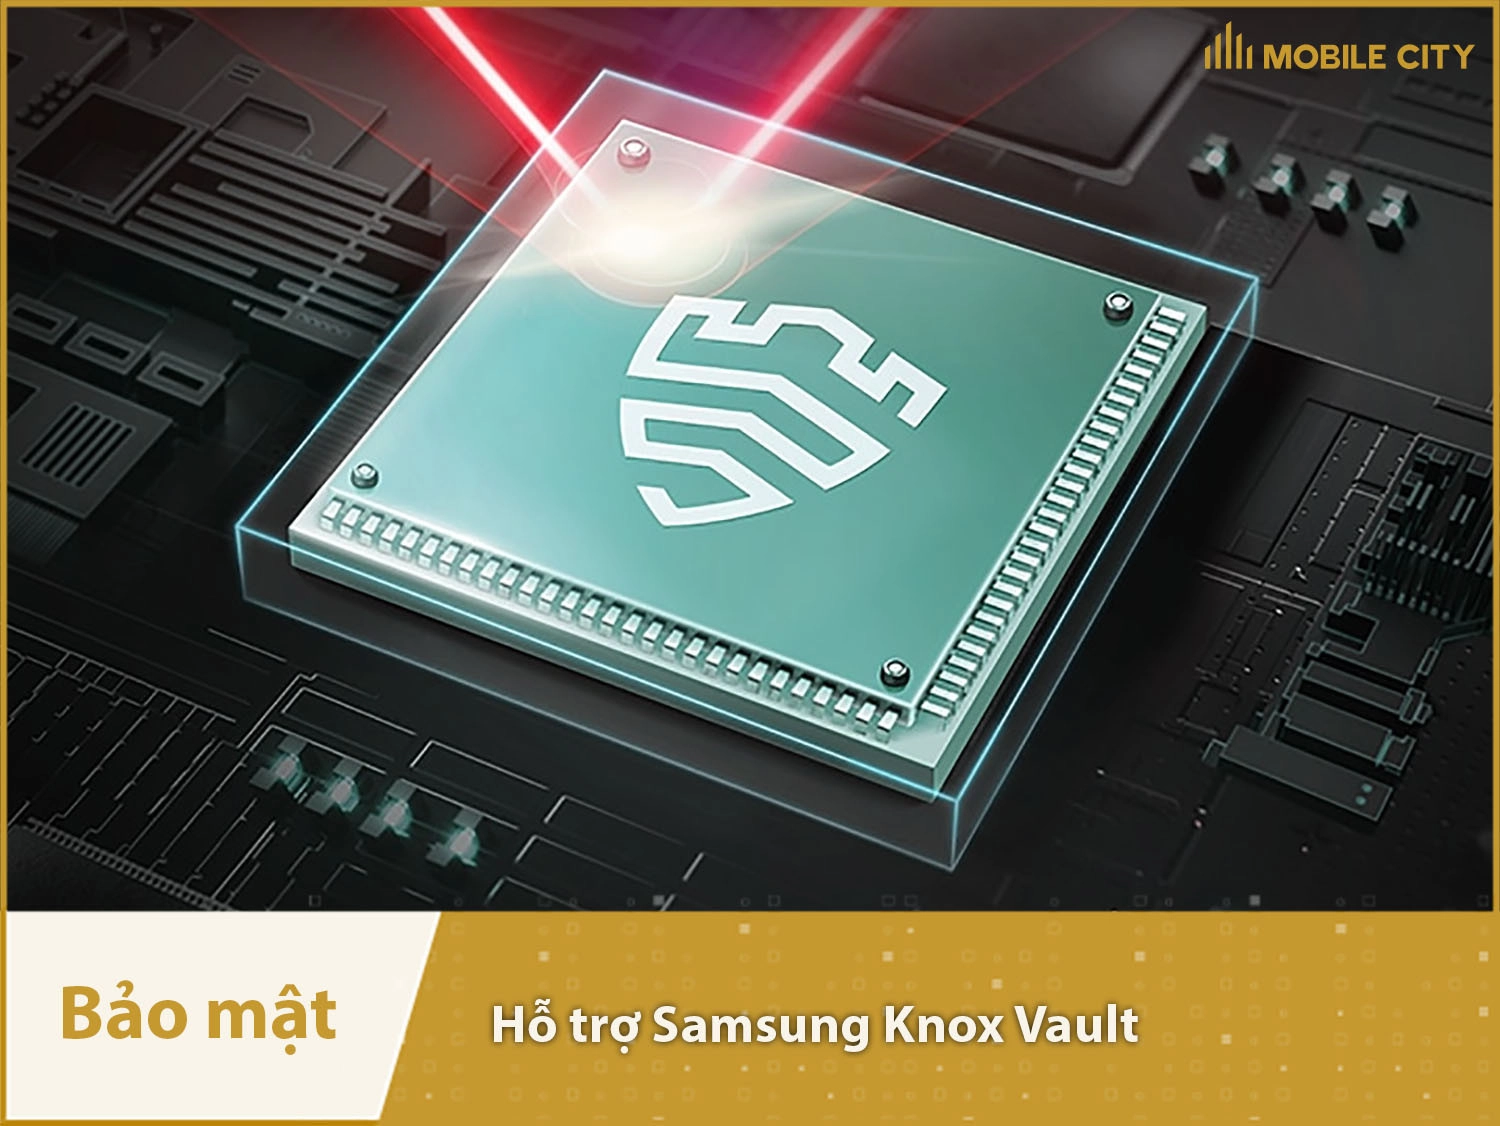 Galaxy C55 hỗ trợ Samsung Knox Vault